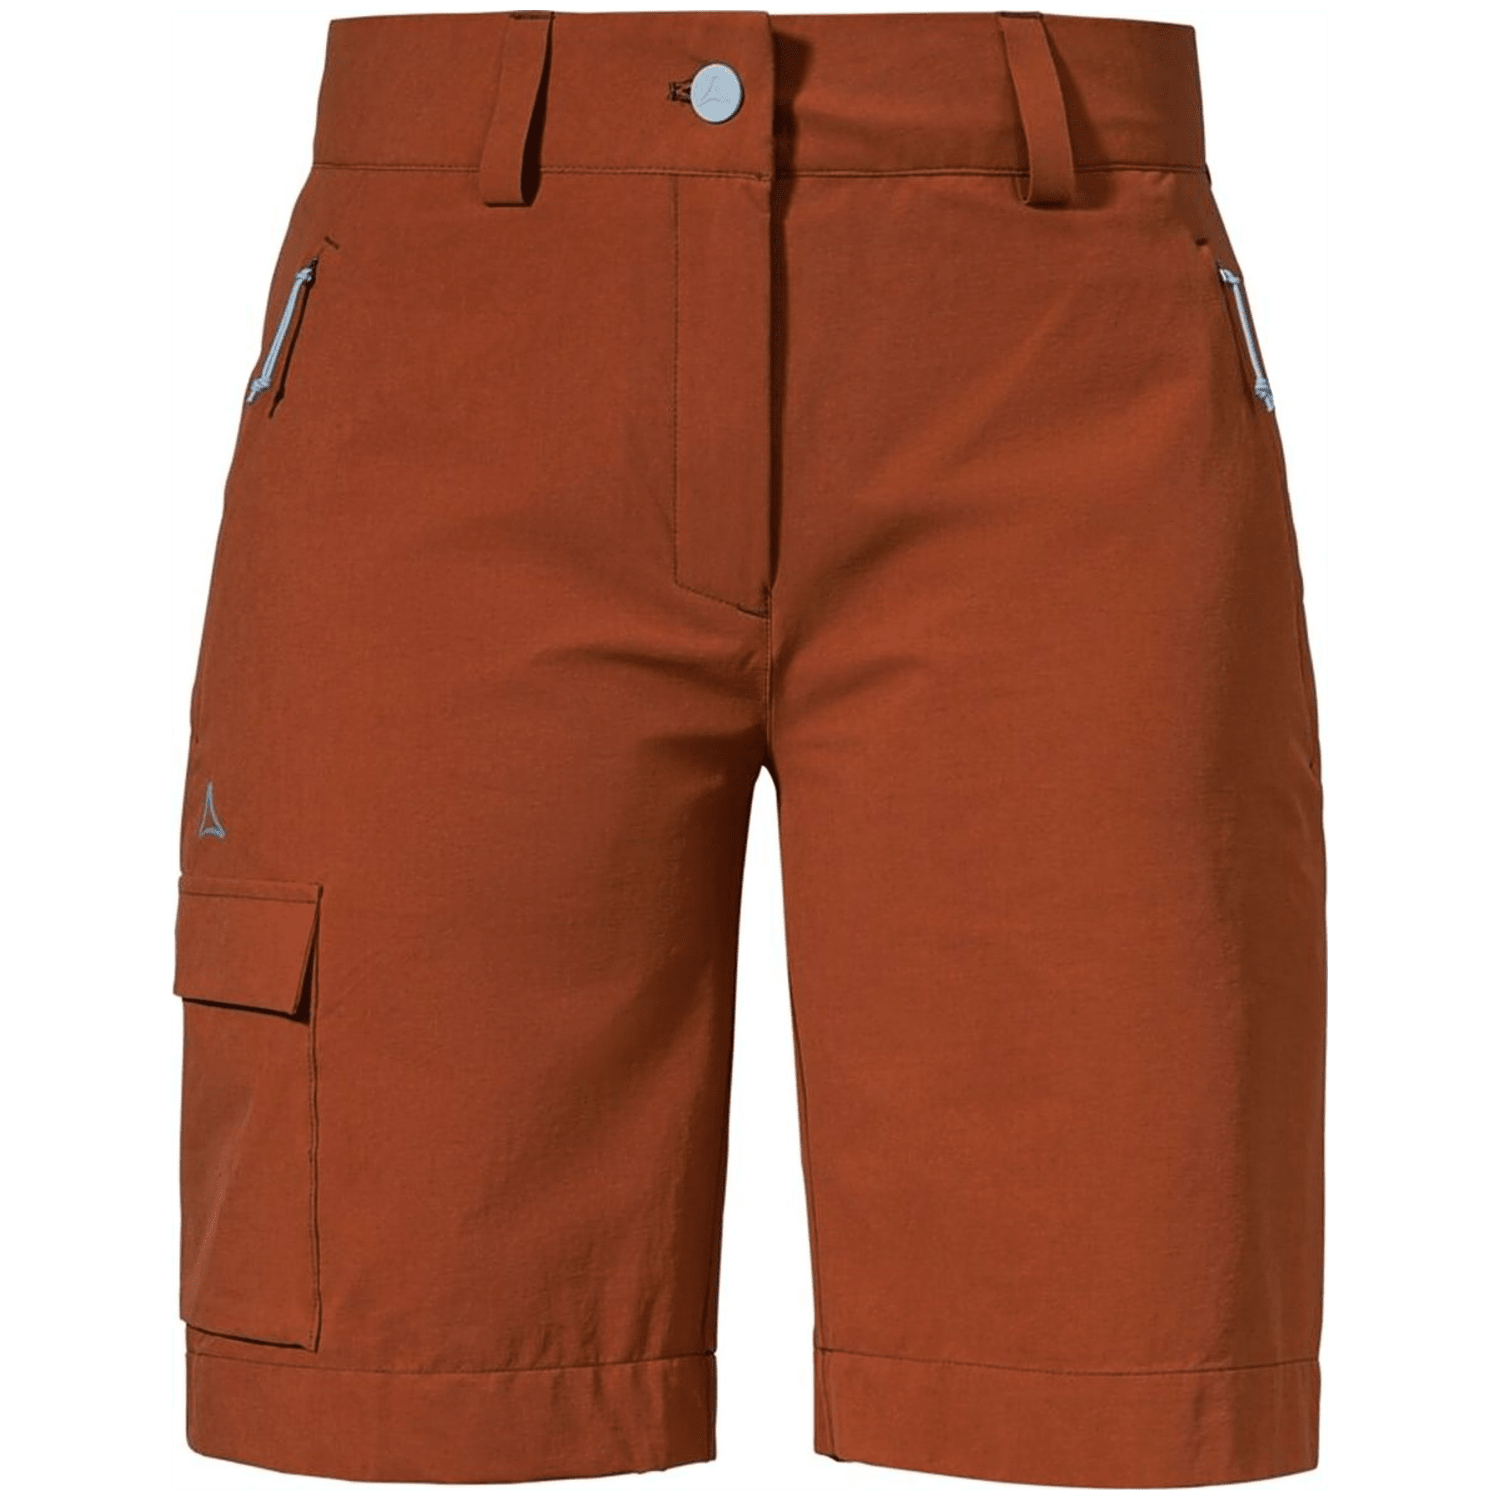 Schöffel Kitzstein Damen Bermuda Shorts